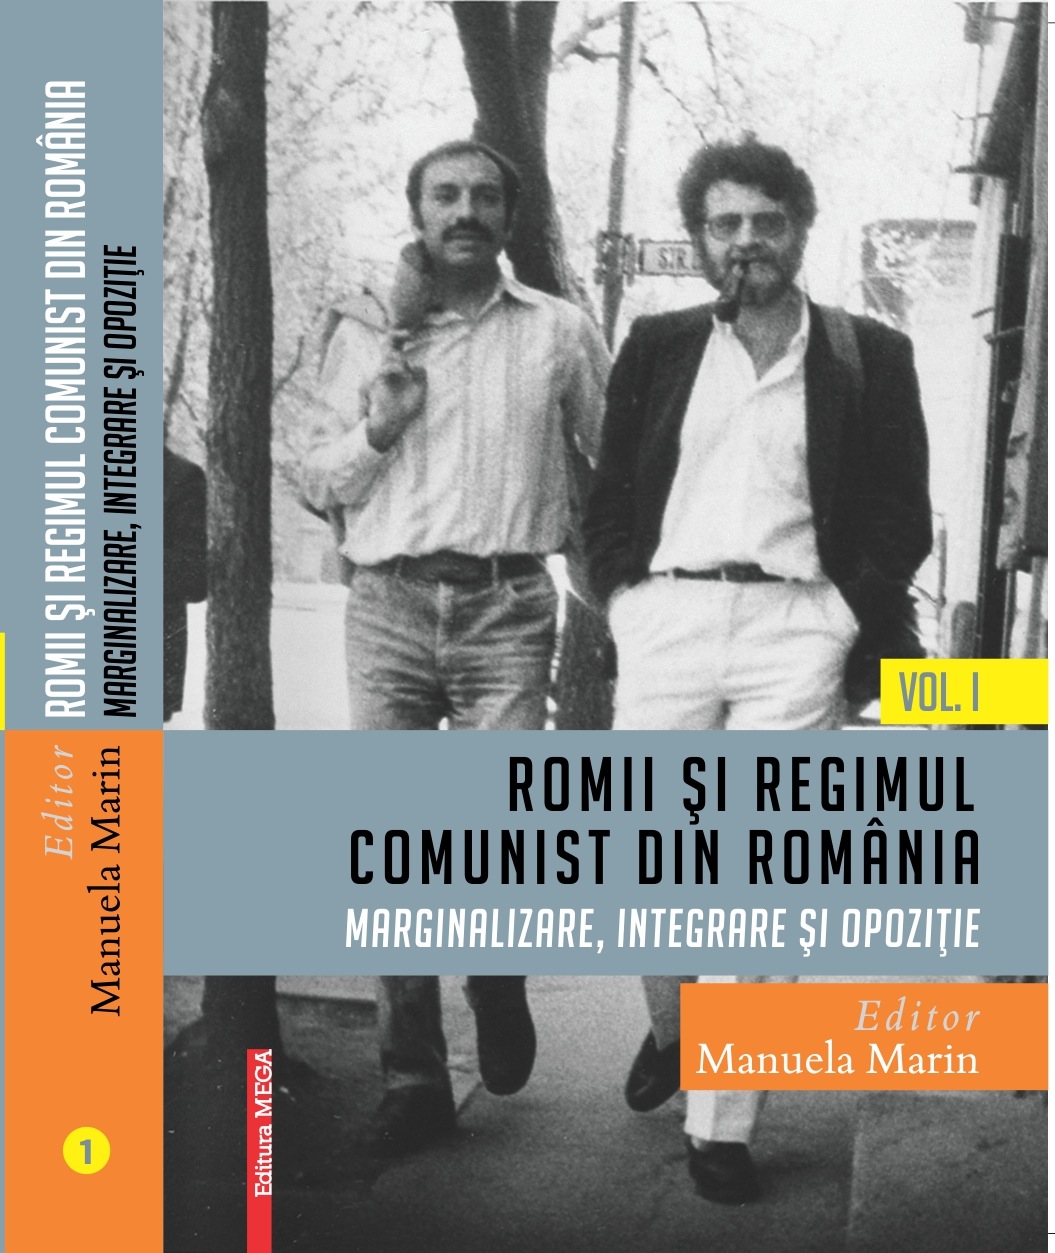 Coperta cărții: Romii și regimul comunist din România: Marginalizare, integrare și opoziție editată de Manuela Marin